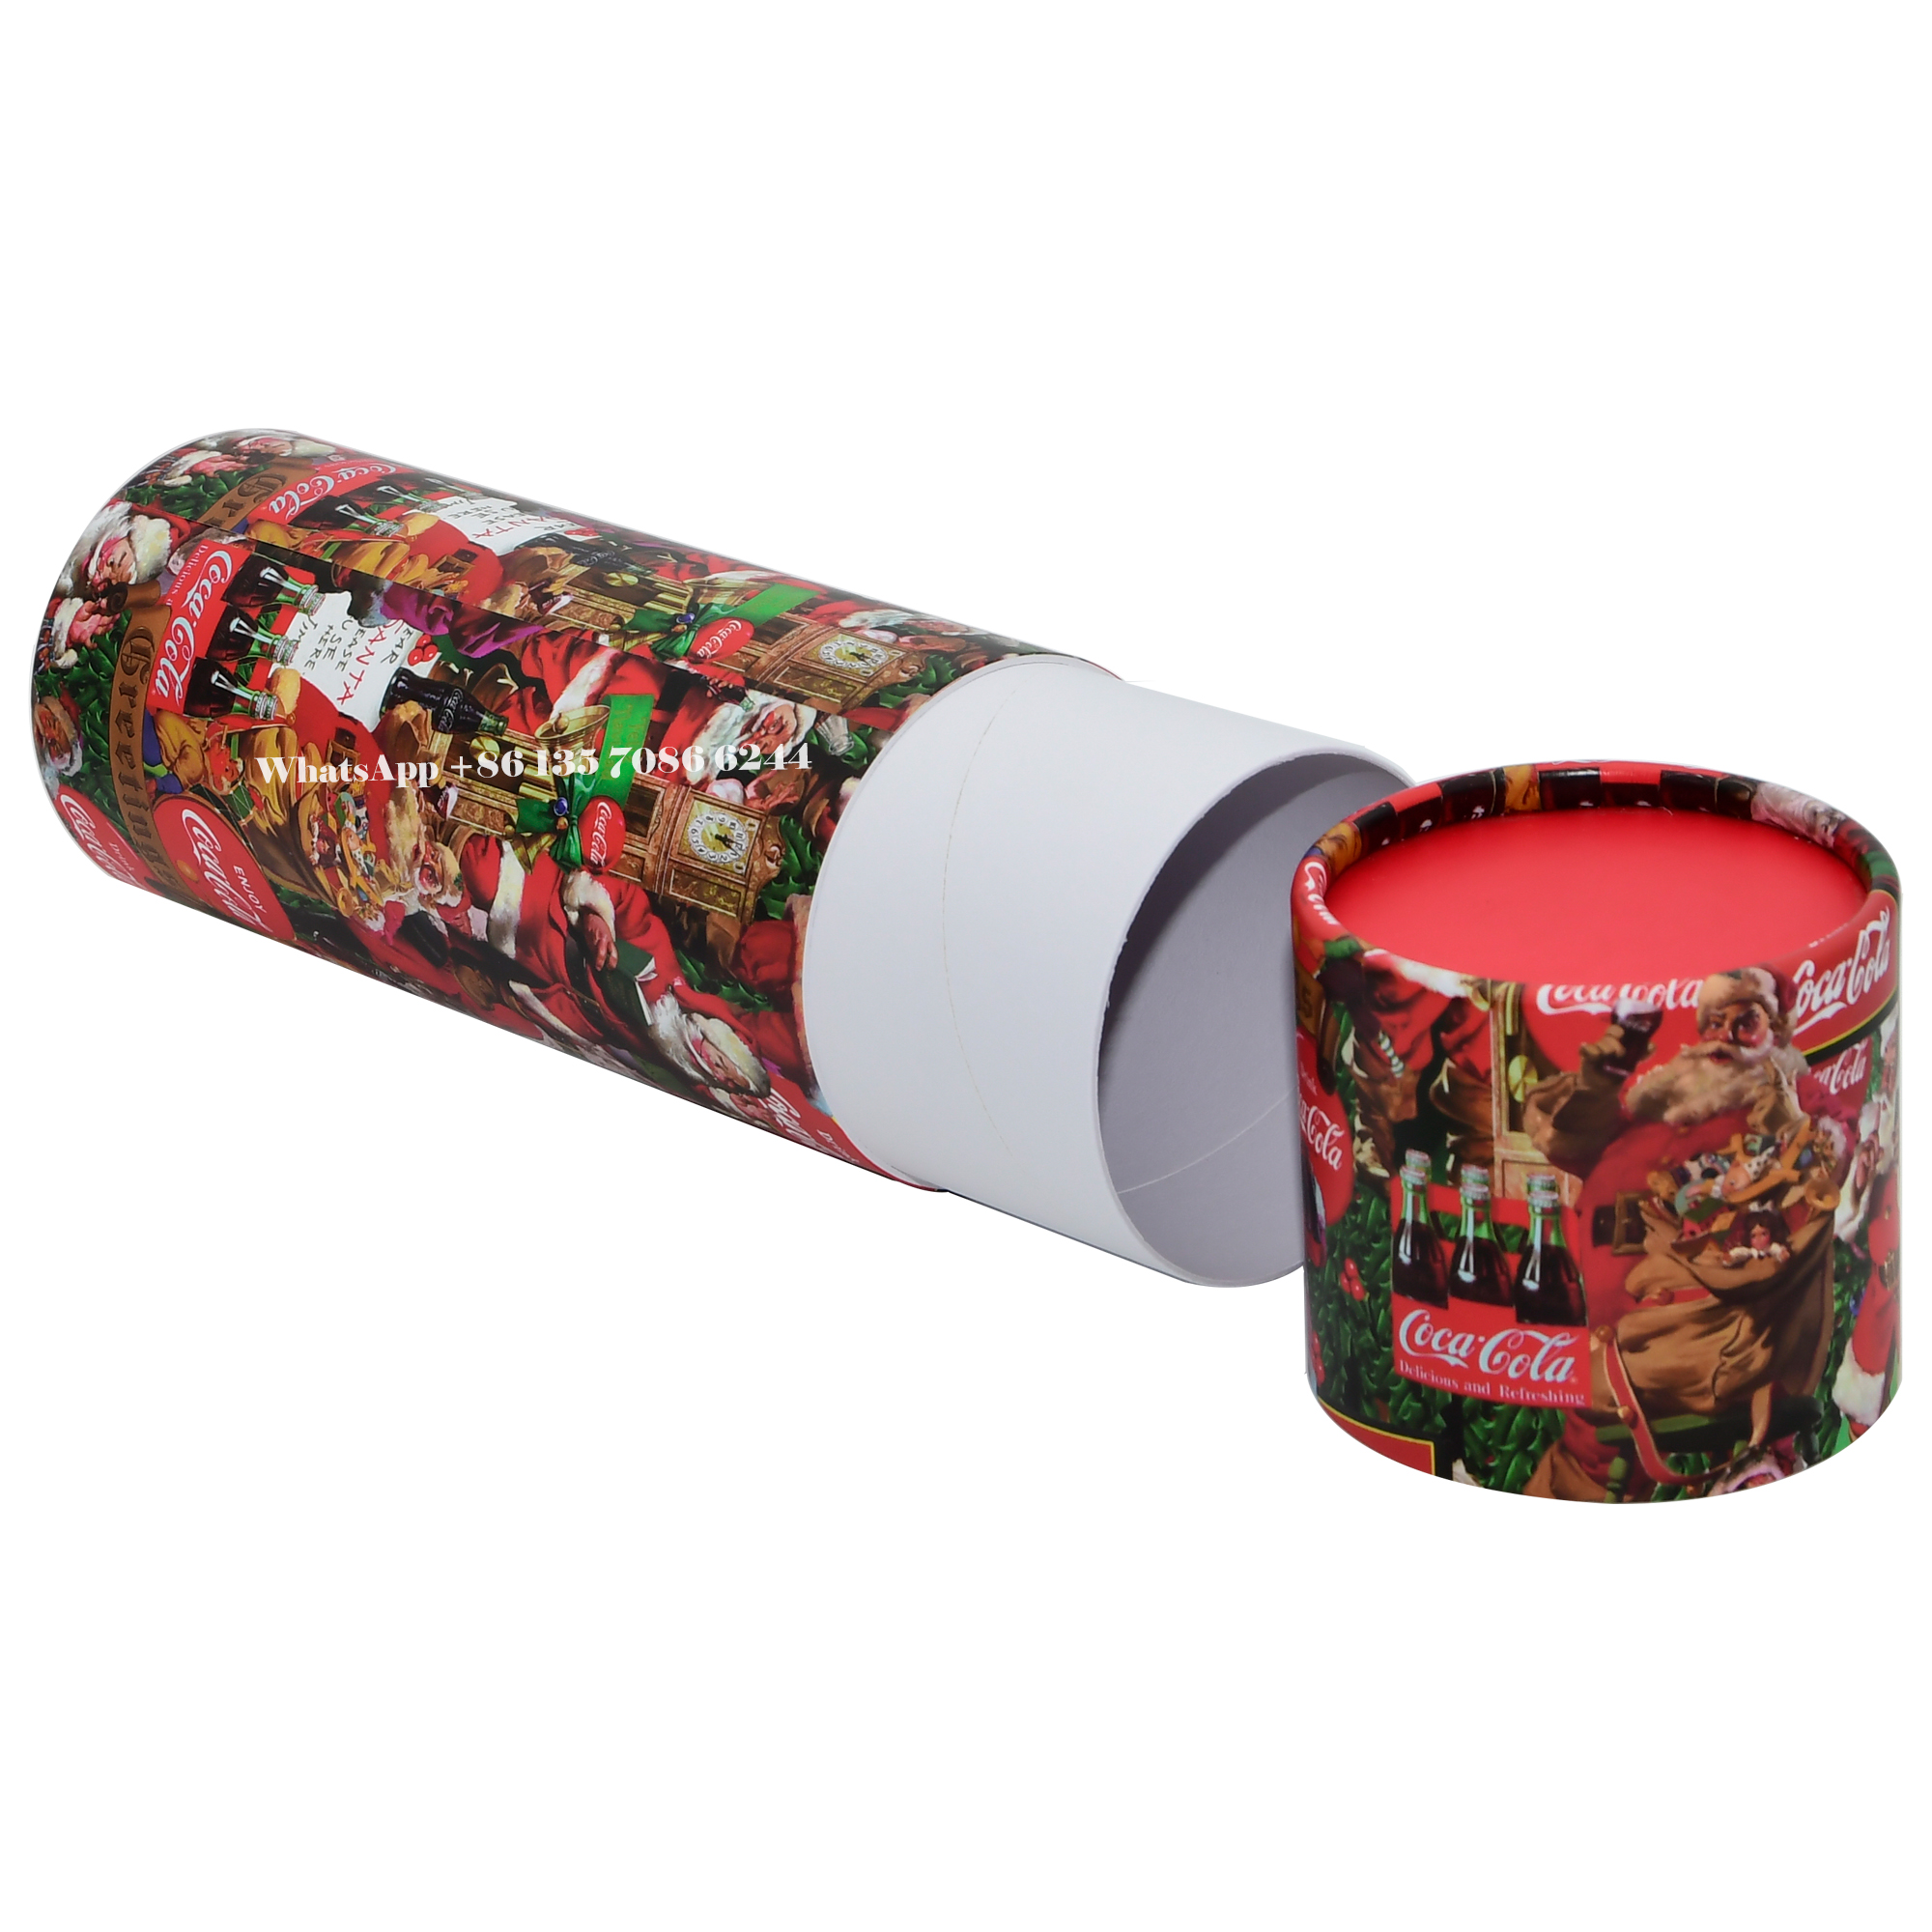 축제적인 크리스마스 에디션 코카콜라 페이퍼 튜브 포장 박스  